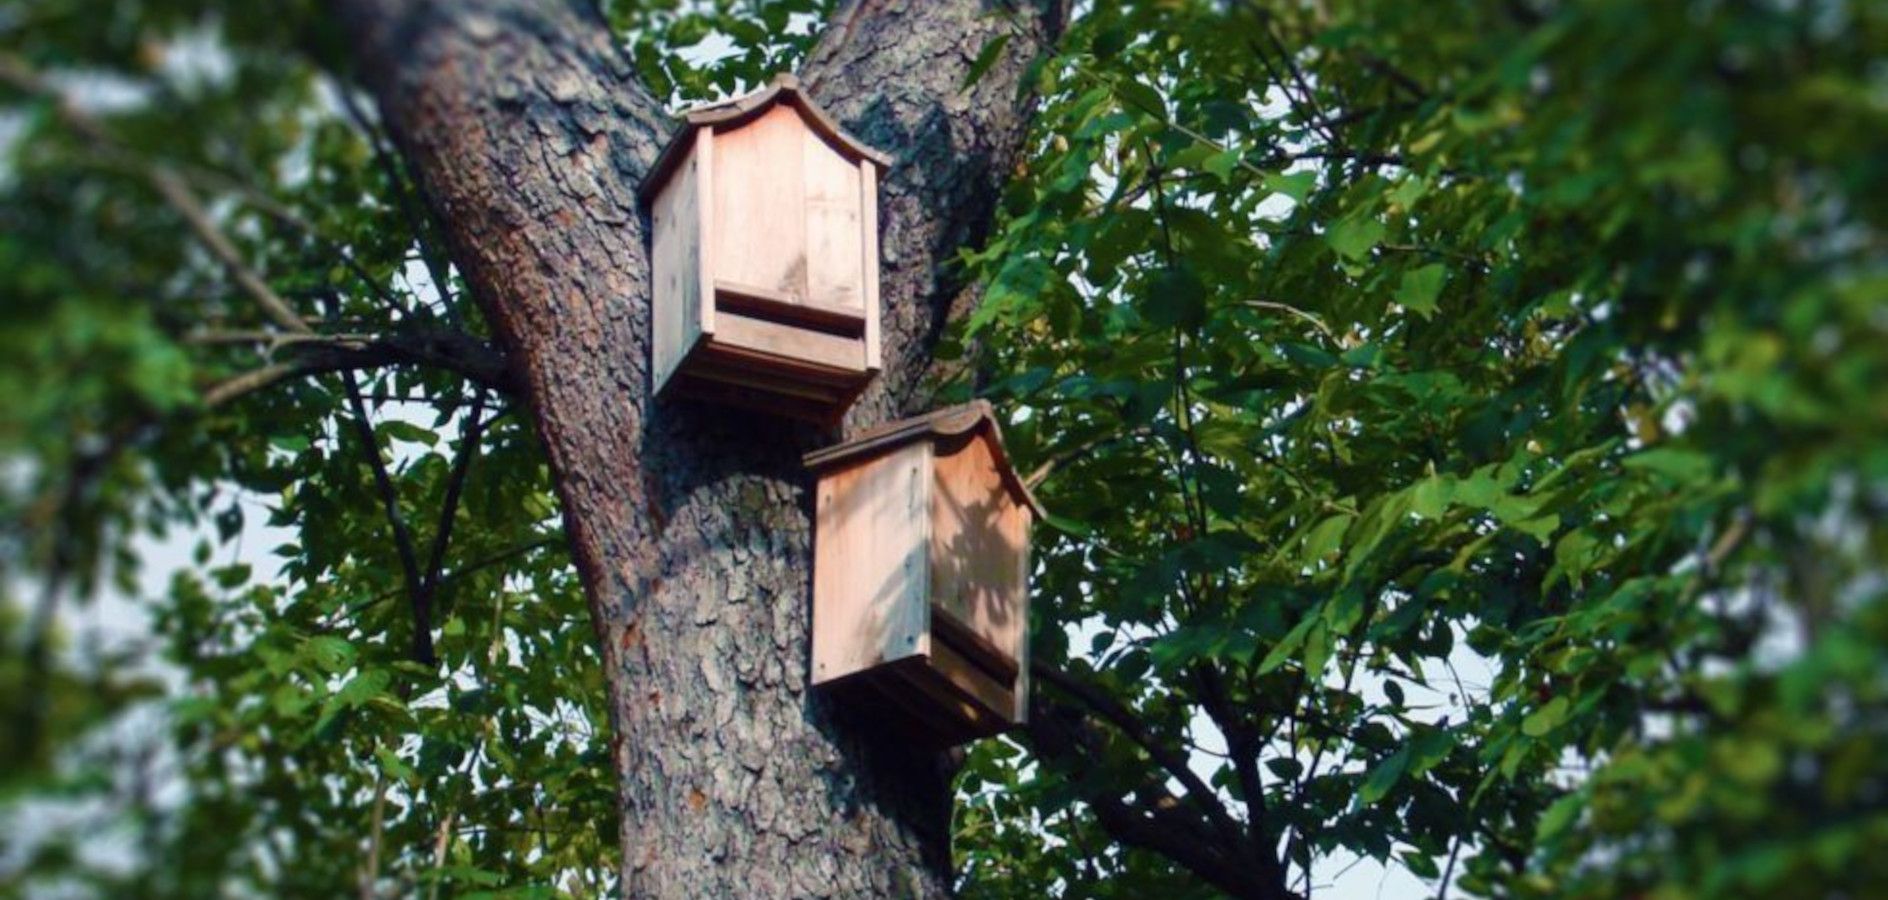 Cómo hacer cajas nido para murciélagos